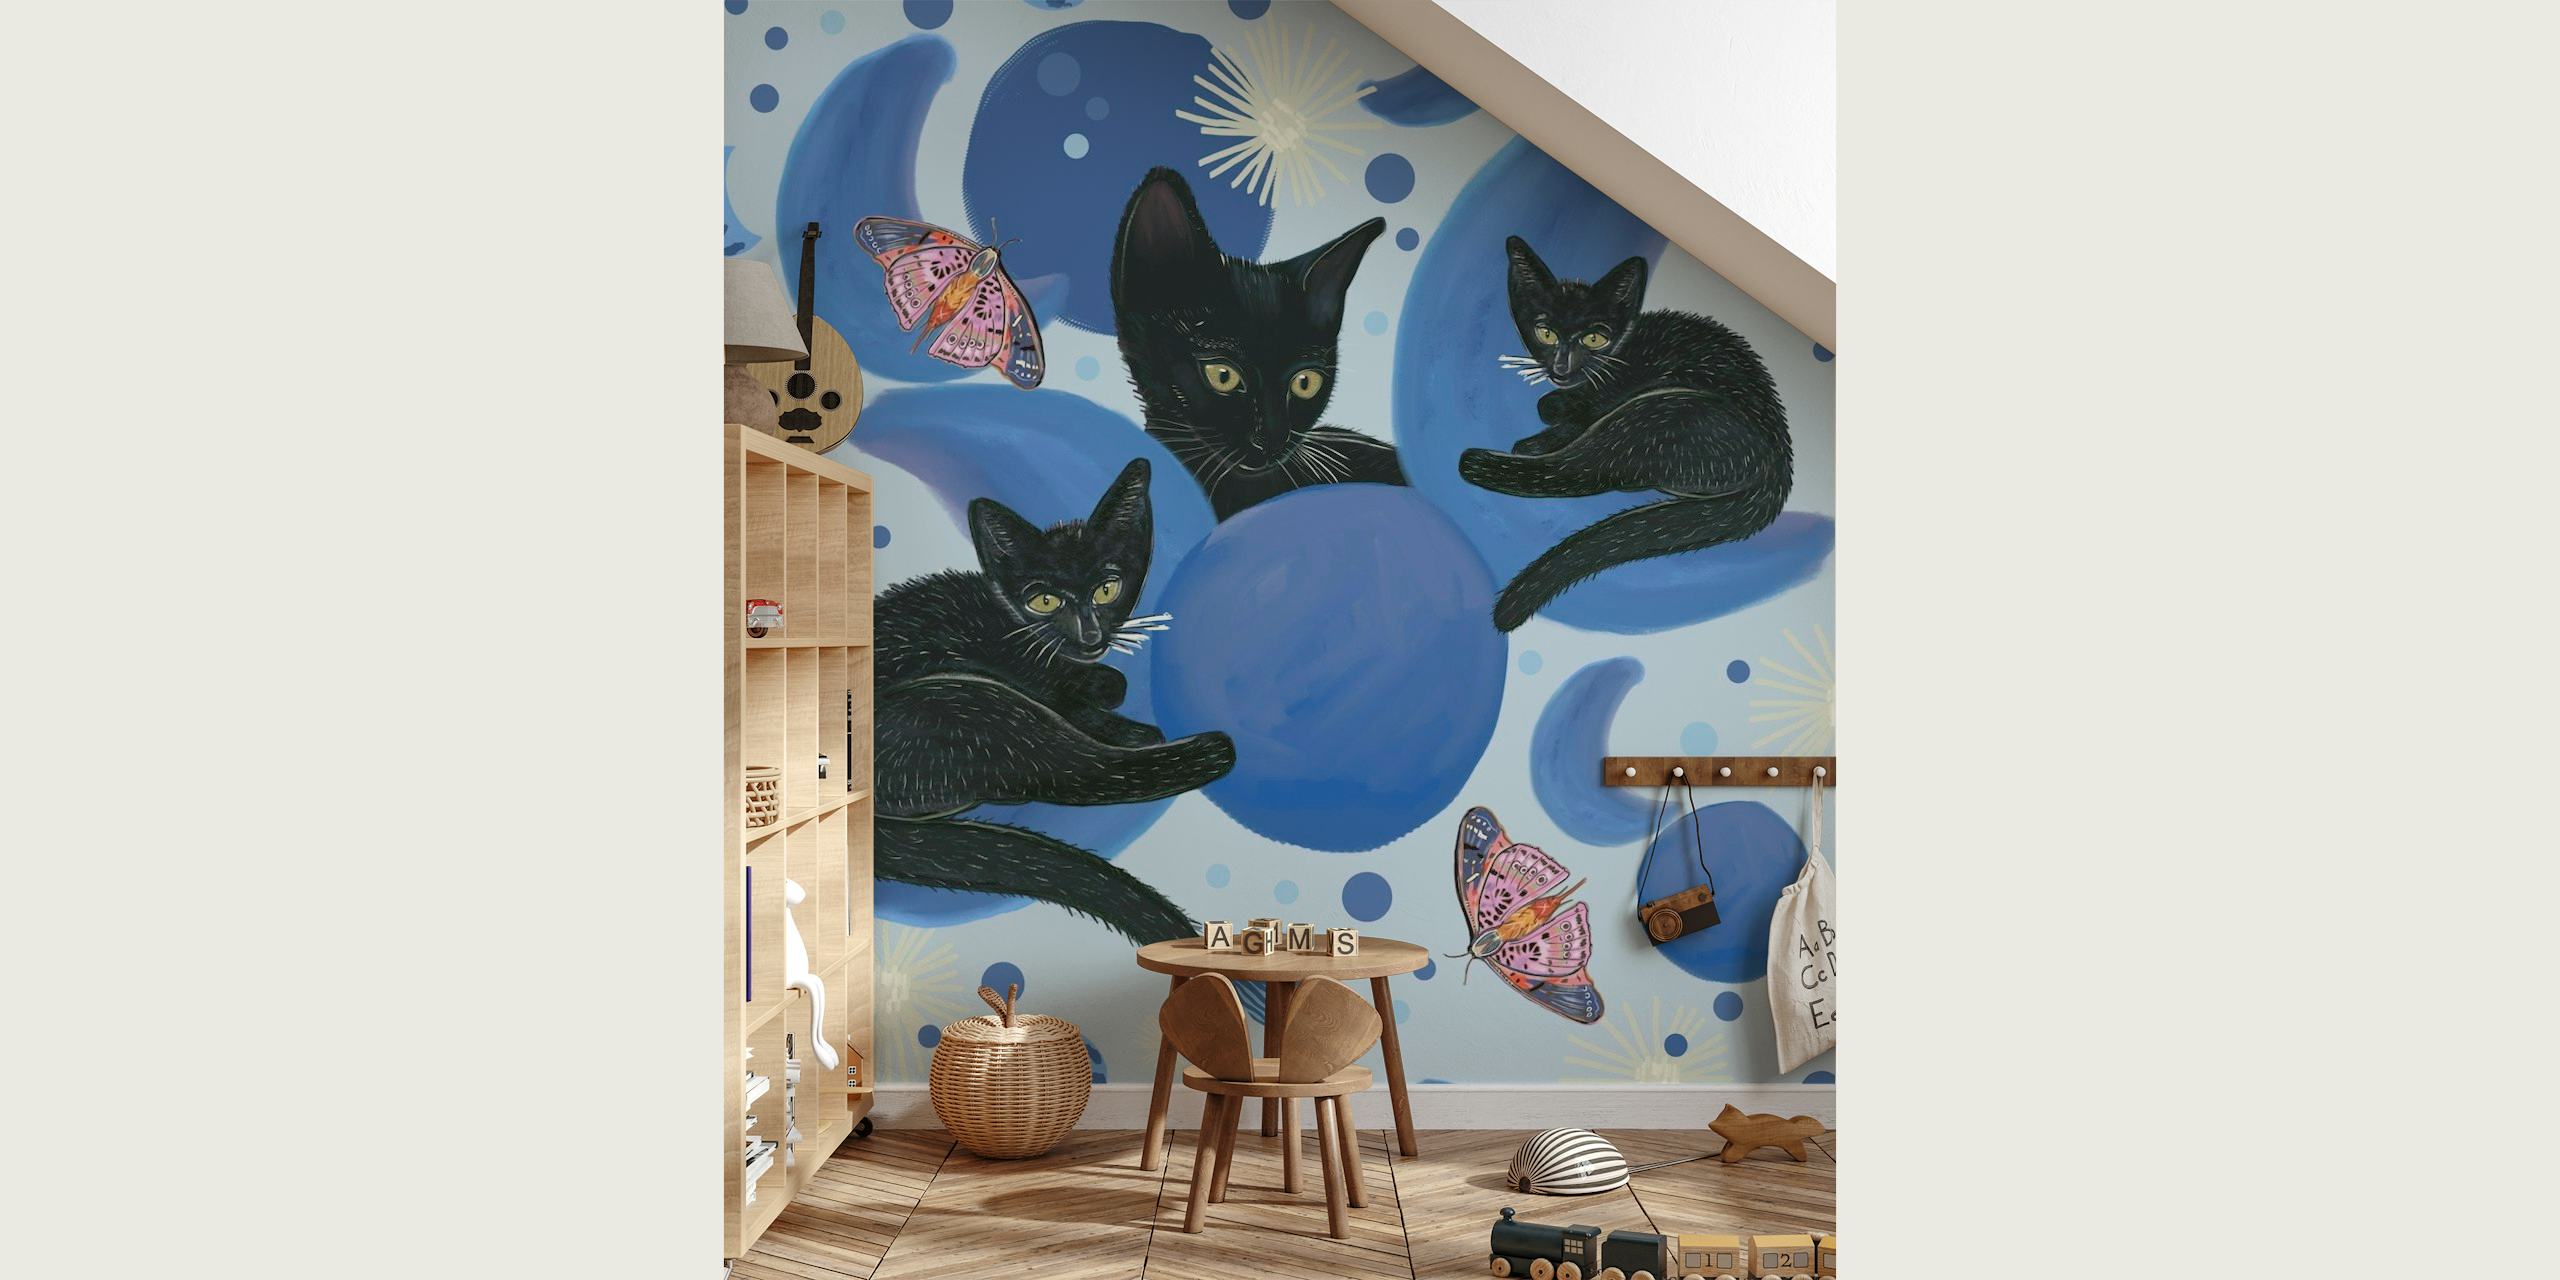 Gatos pretos intercalados com fases da lua e estrelas em um mural